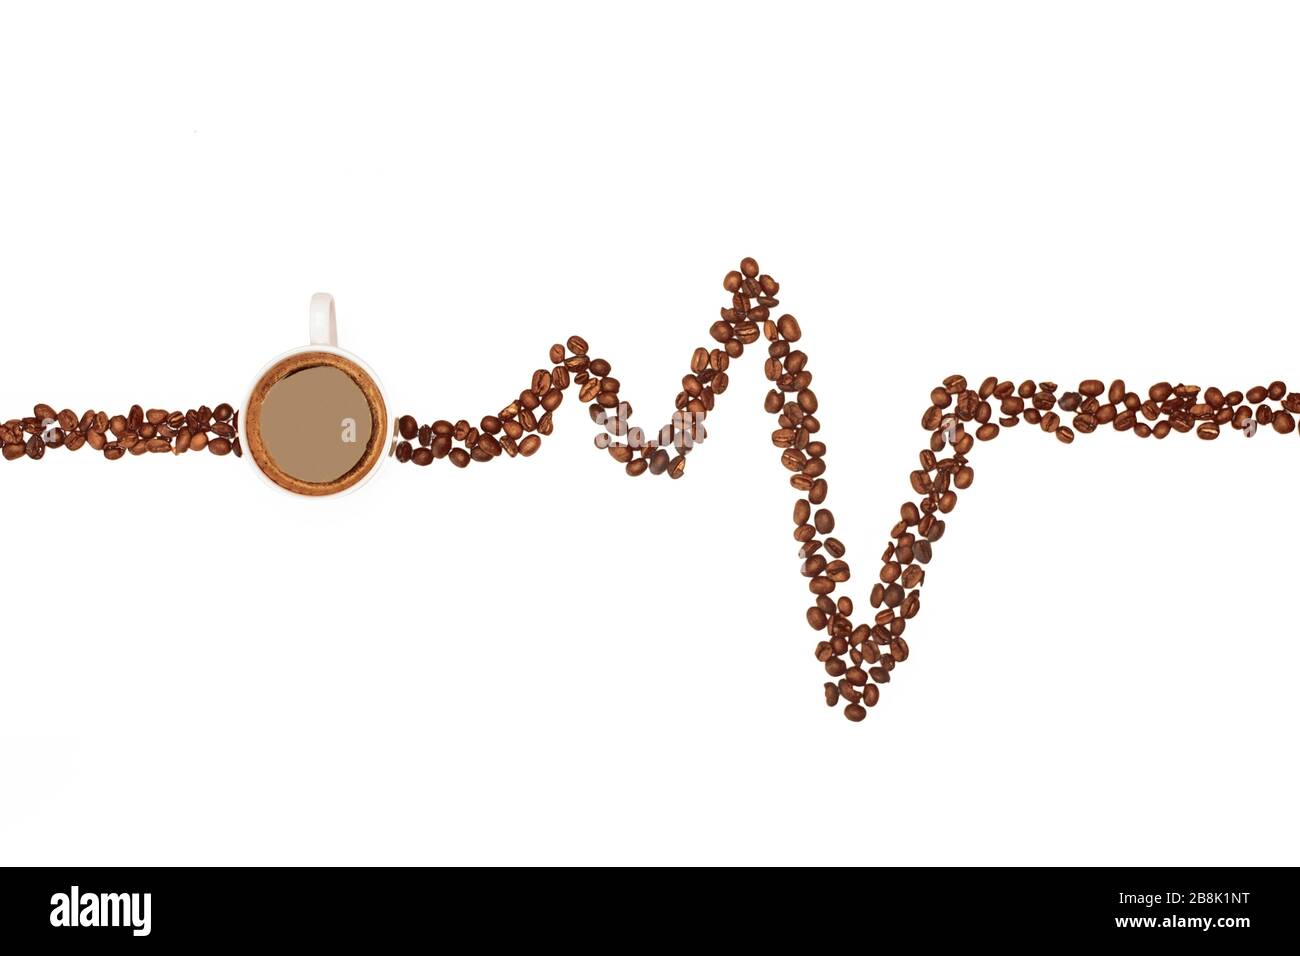 Kreative Stillleben von flüssigen und Kaffeebohnen, die ein Elektrokardiogramm zeichnen Stockfoto